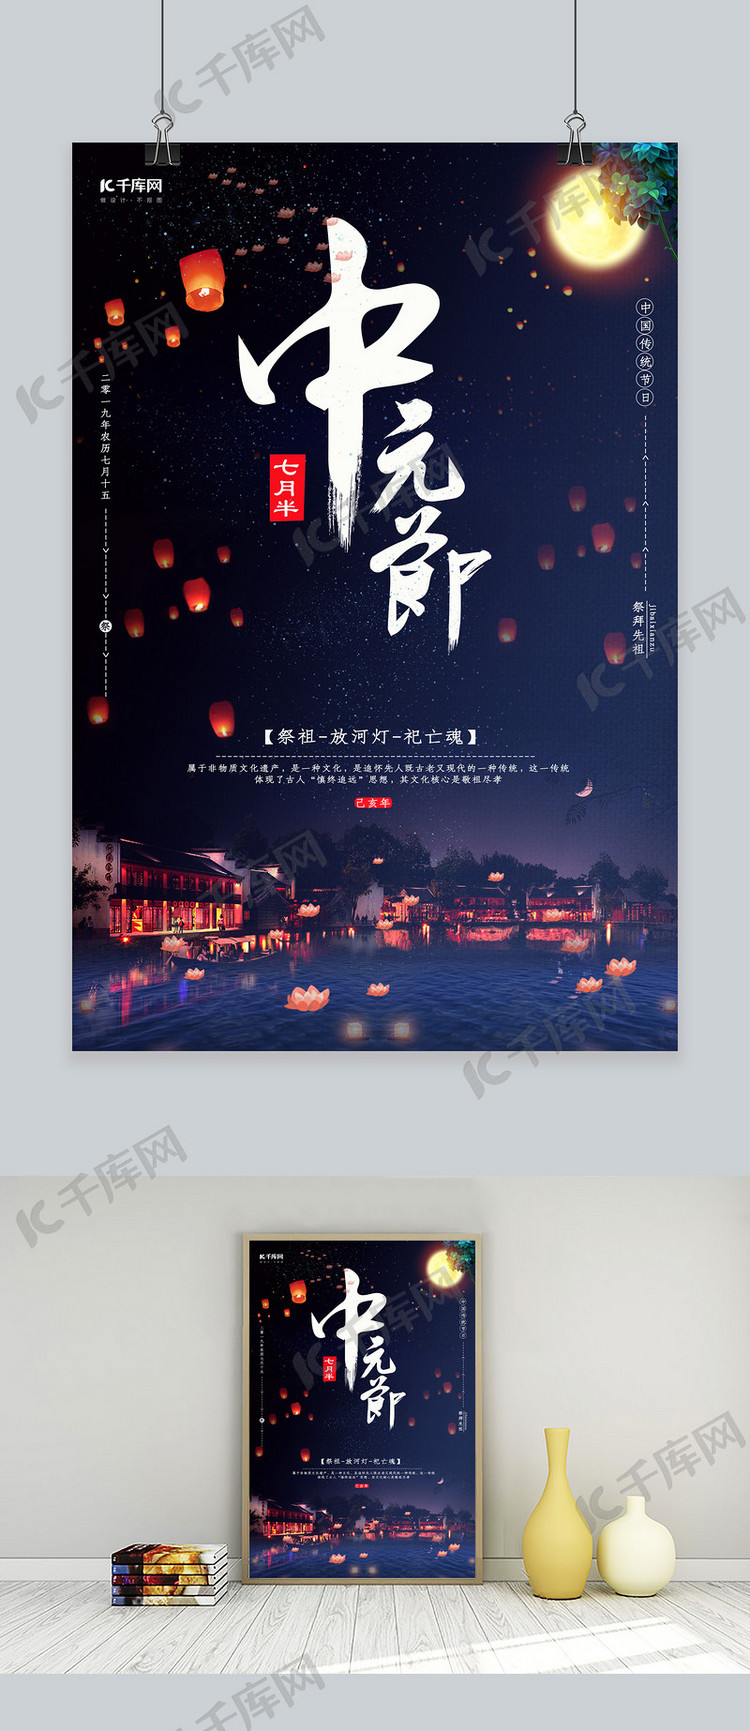 中元节祭拜祈福海报